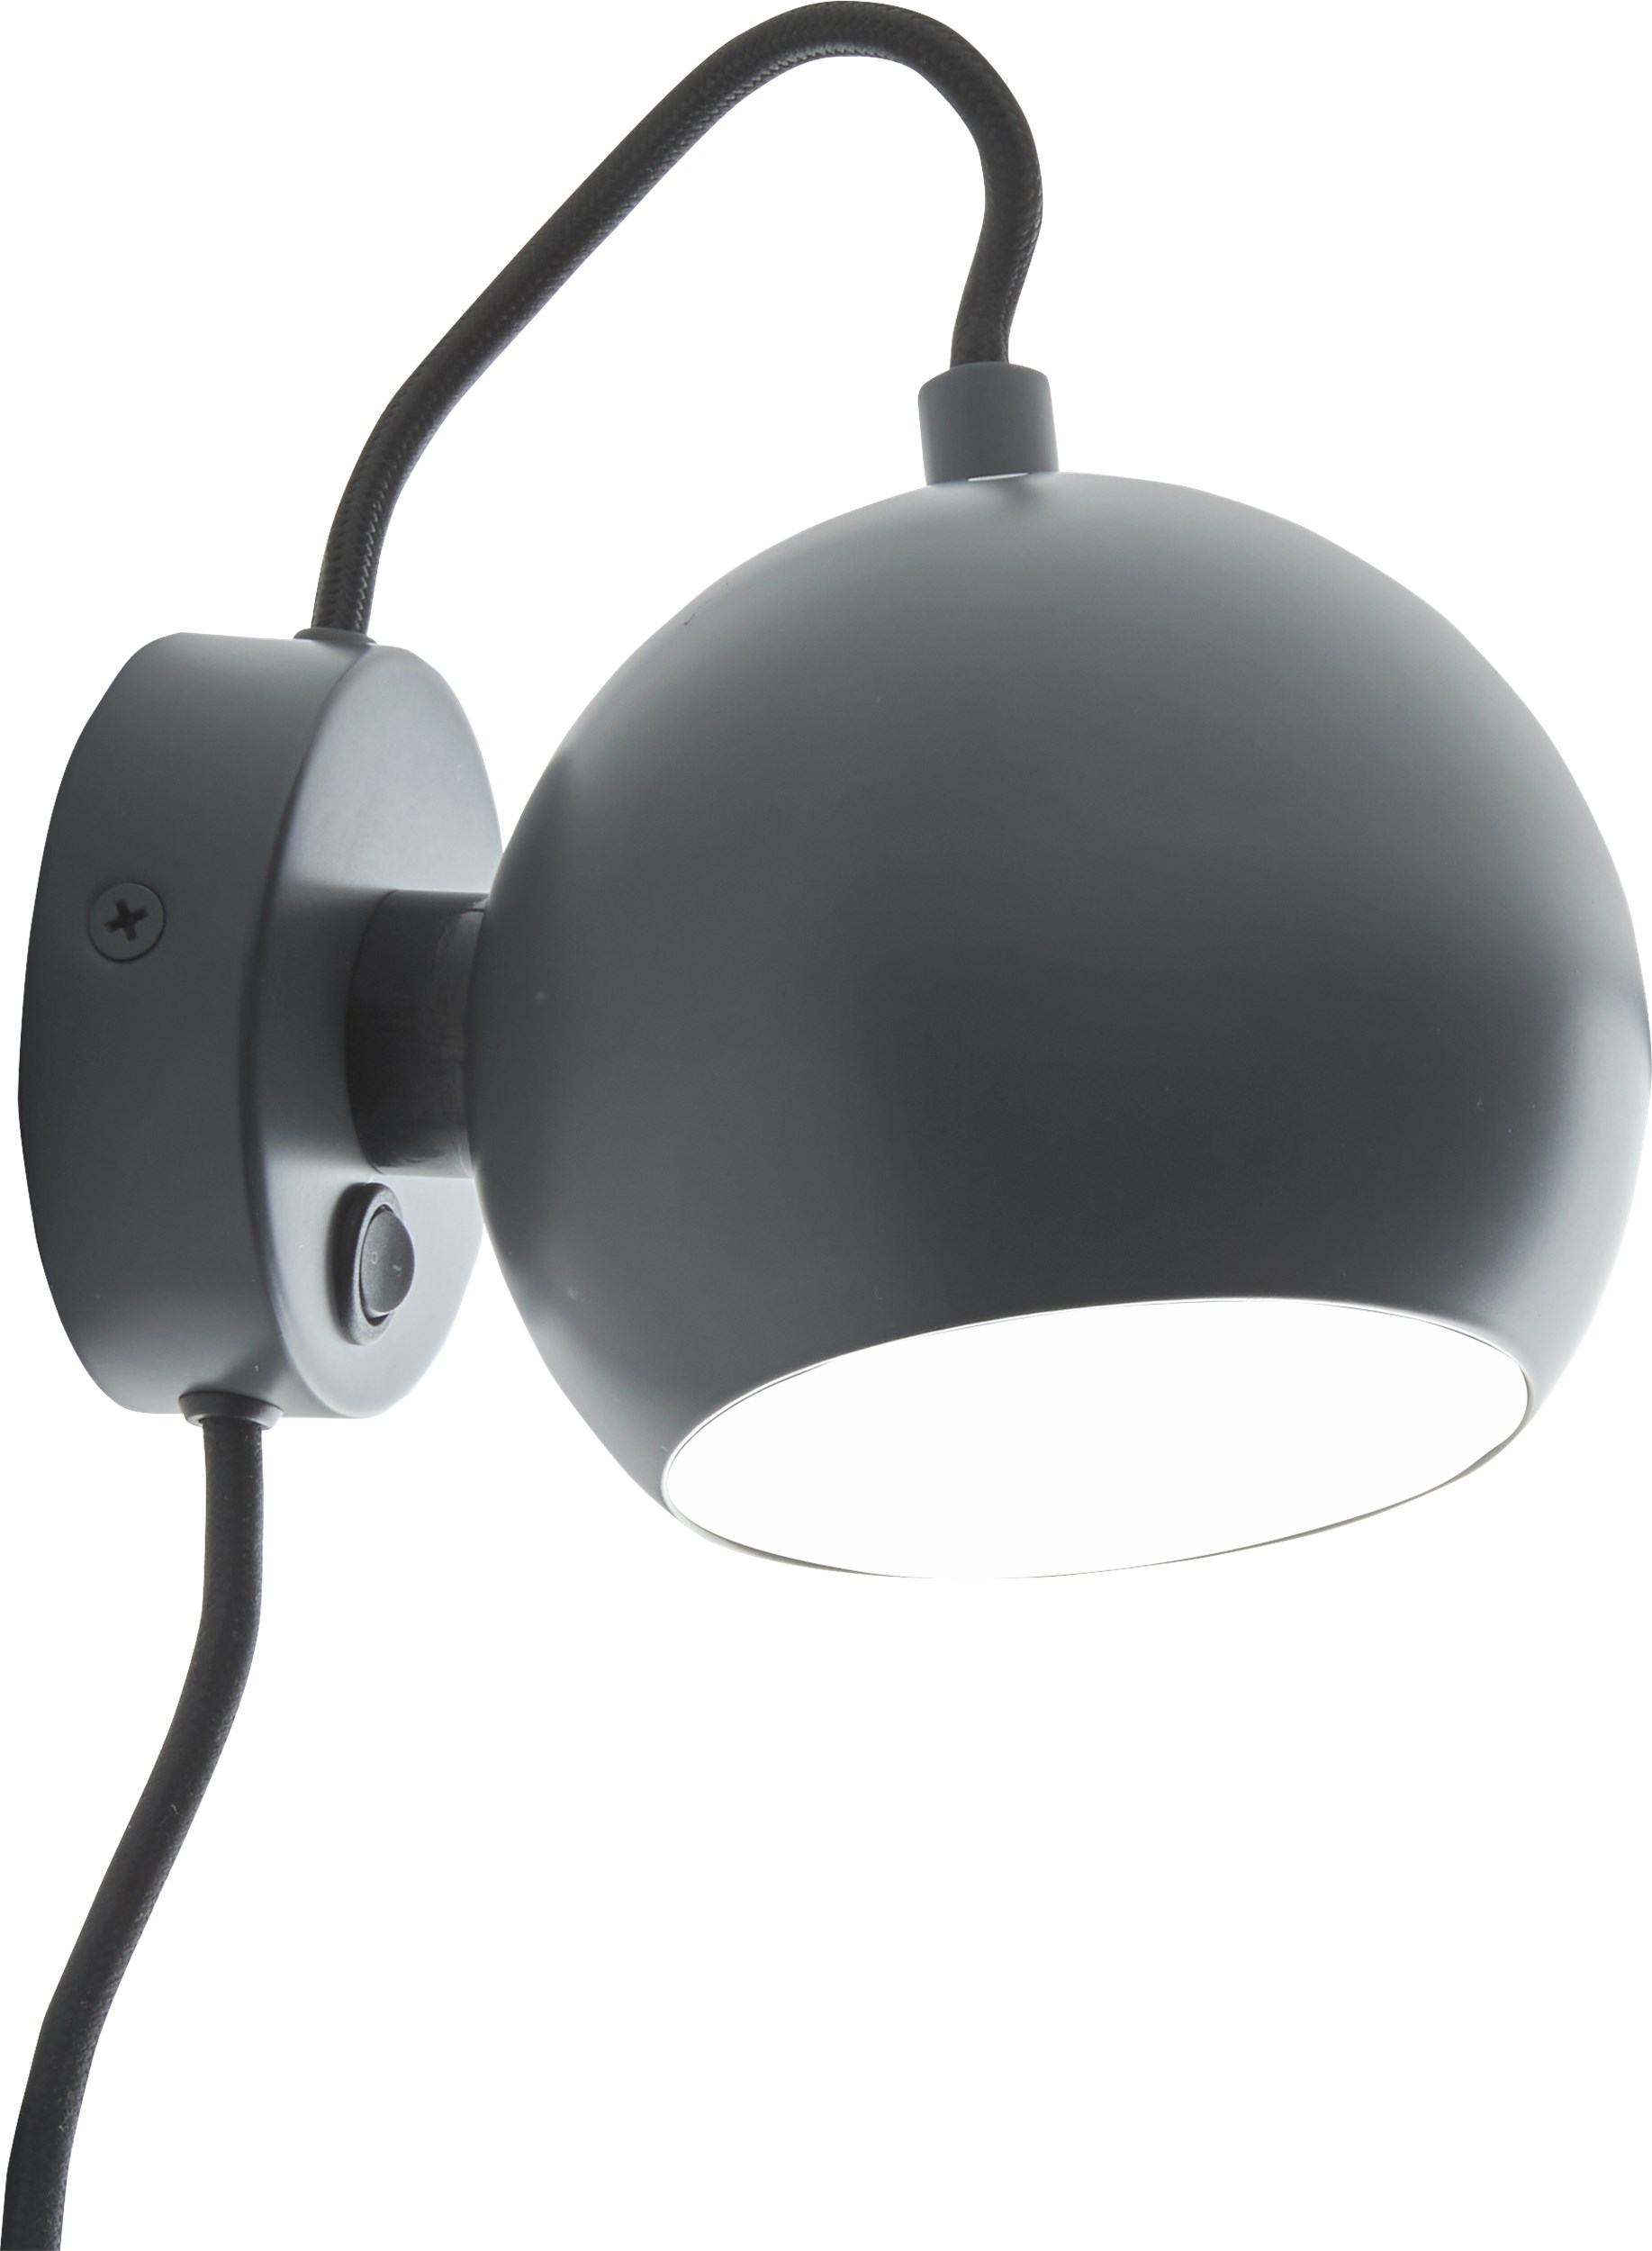 Ball Vägglampa 12 cm - Matt grå metallskärm, svart textilsladd och med strömbrytare på basen